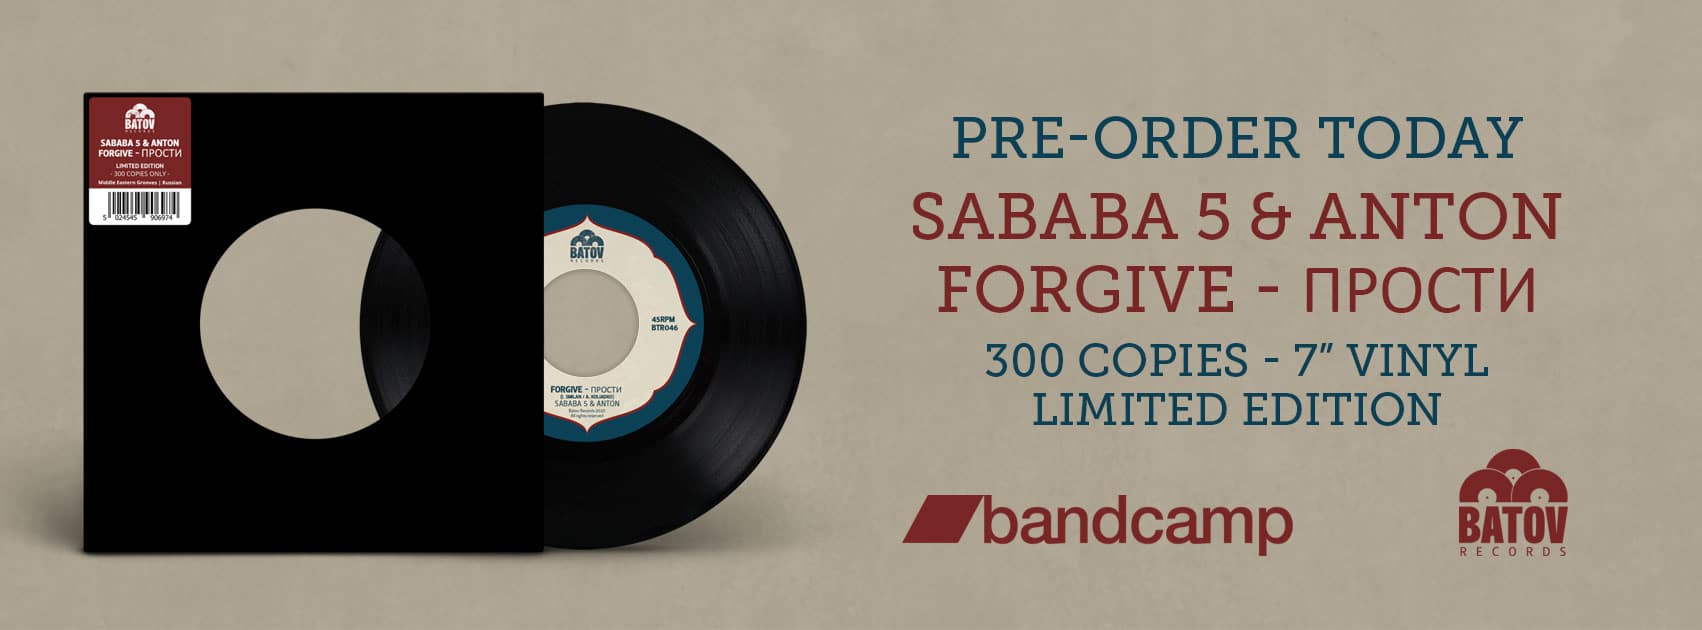 sababa 5 and anton forgive